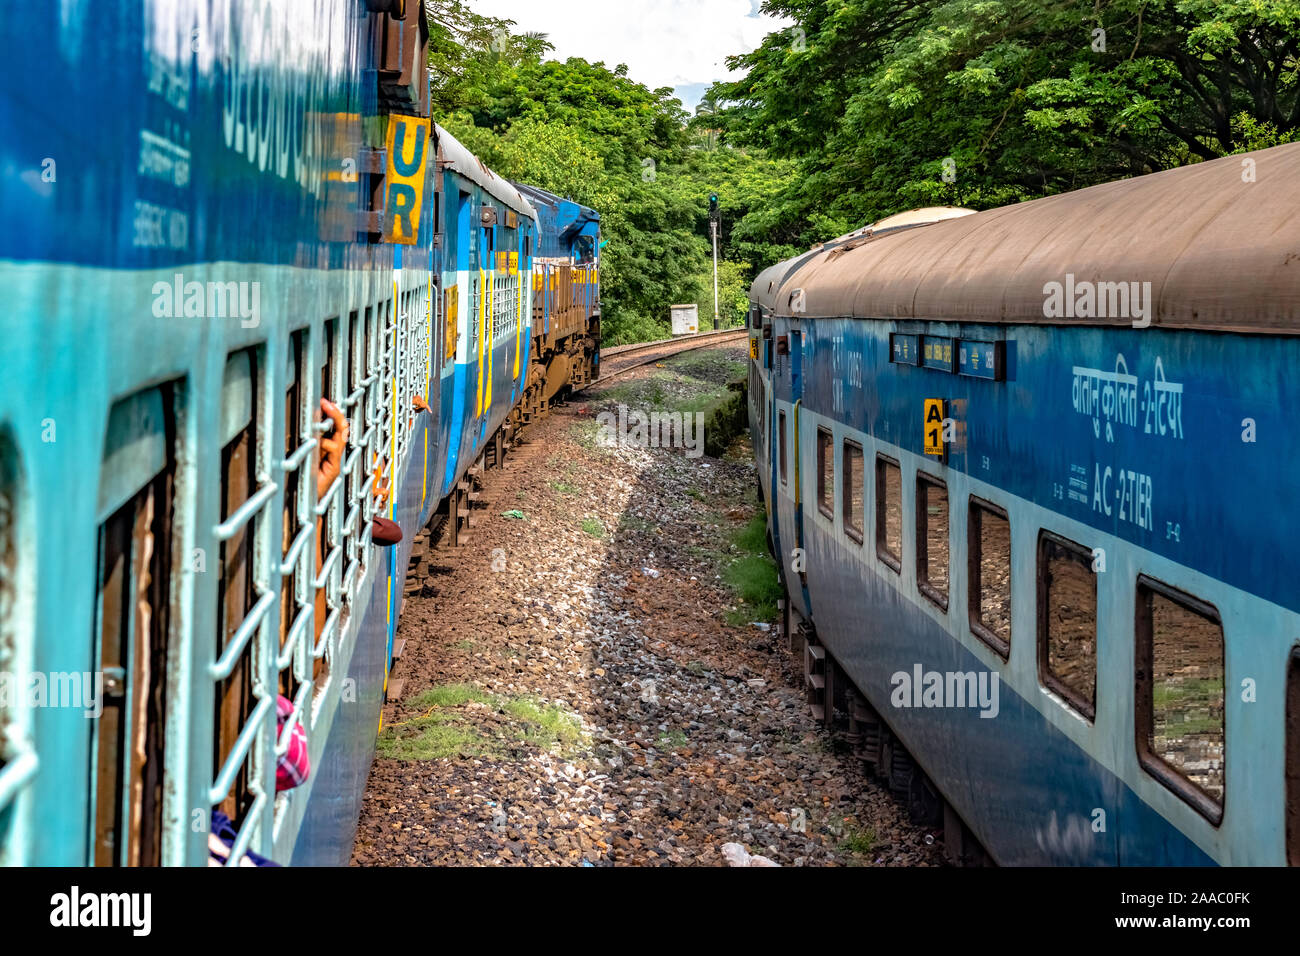 Le ferrovie indiane Treno in partenza a ritmo lento, attraversando un altro treno in esecuzione parallela ad essa in direzione opposta, immerso nel verde di i Ghati Occidentali. Foto Stock